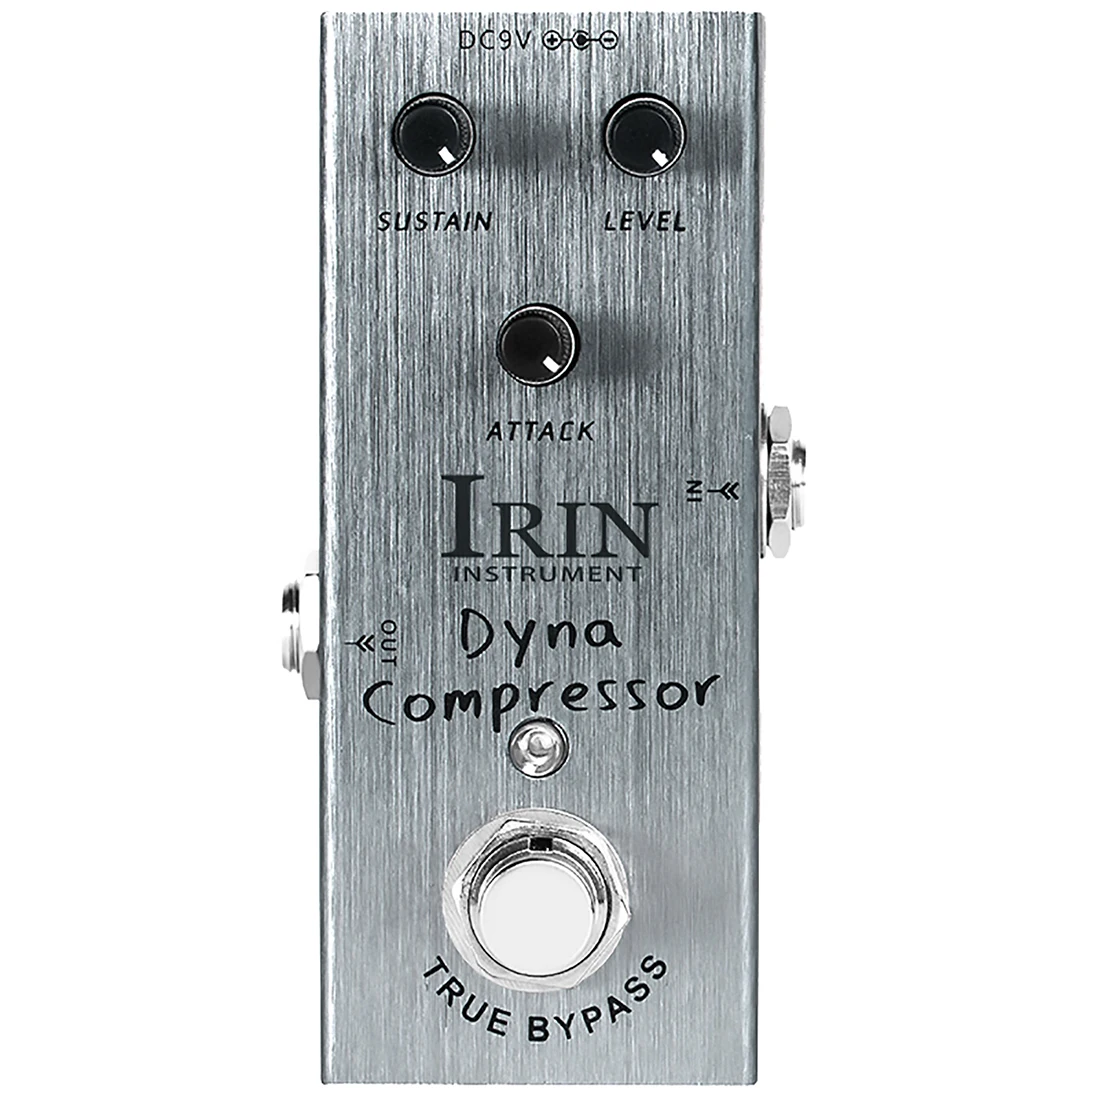 IRIN IN-06 Effectors Воссоздание Классического компрессора Ross с низким уровнем шума для электрогитары/басовой педали эффектов Dynamic Compressor